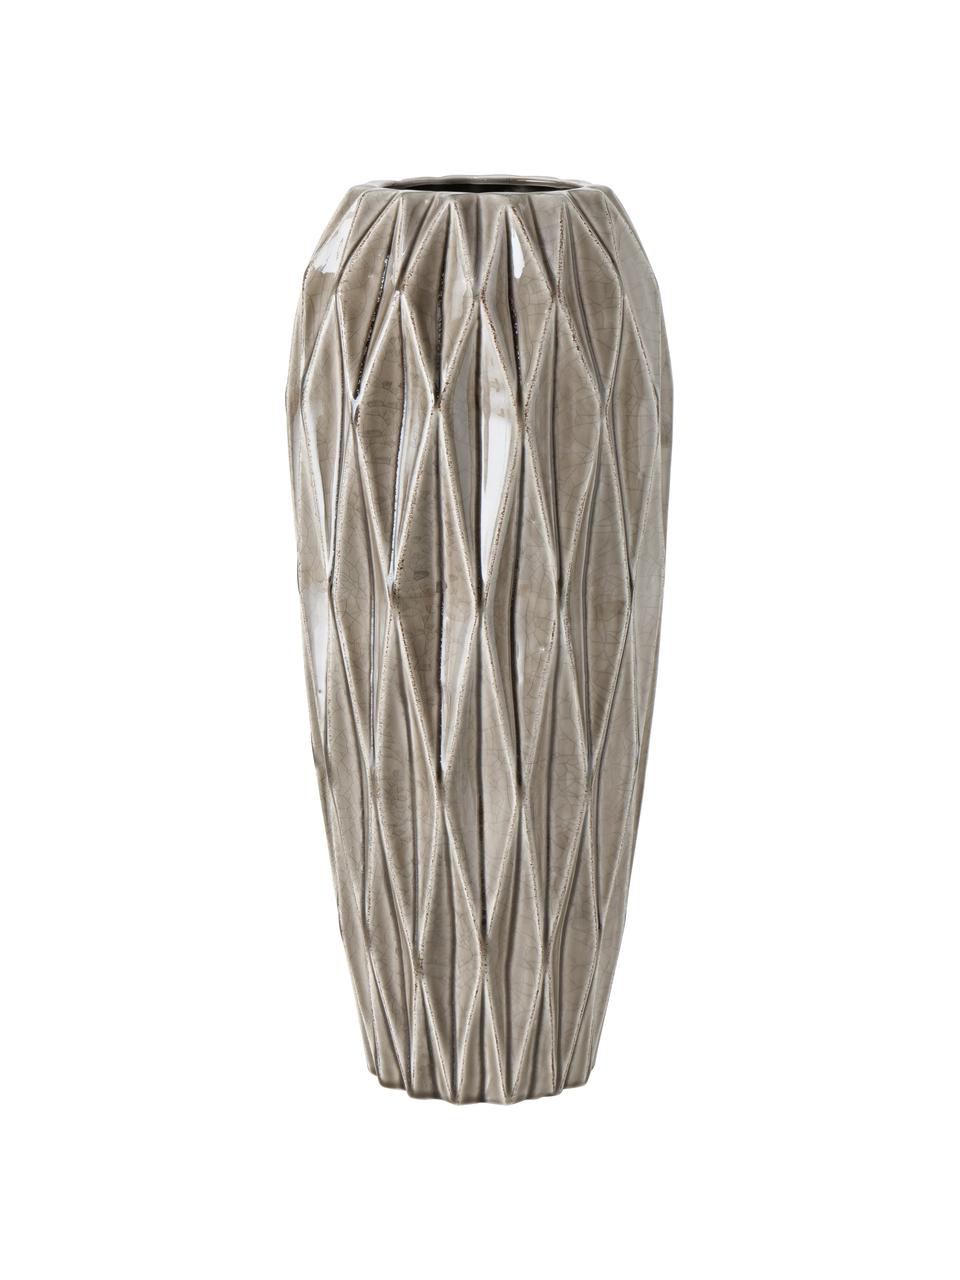 Vase de sol fait main Tigan, Grès cérame, émaillé, Gris, Ø 20 cm x haut. 49 cm